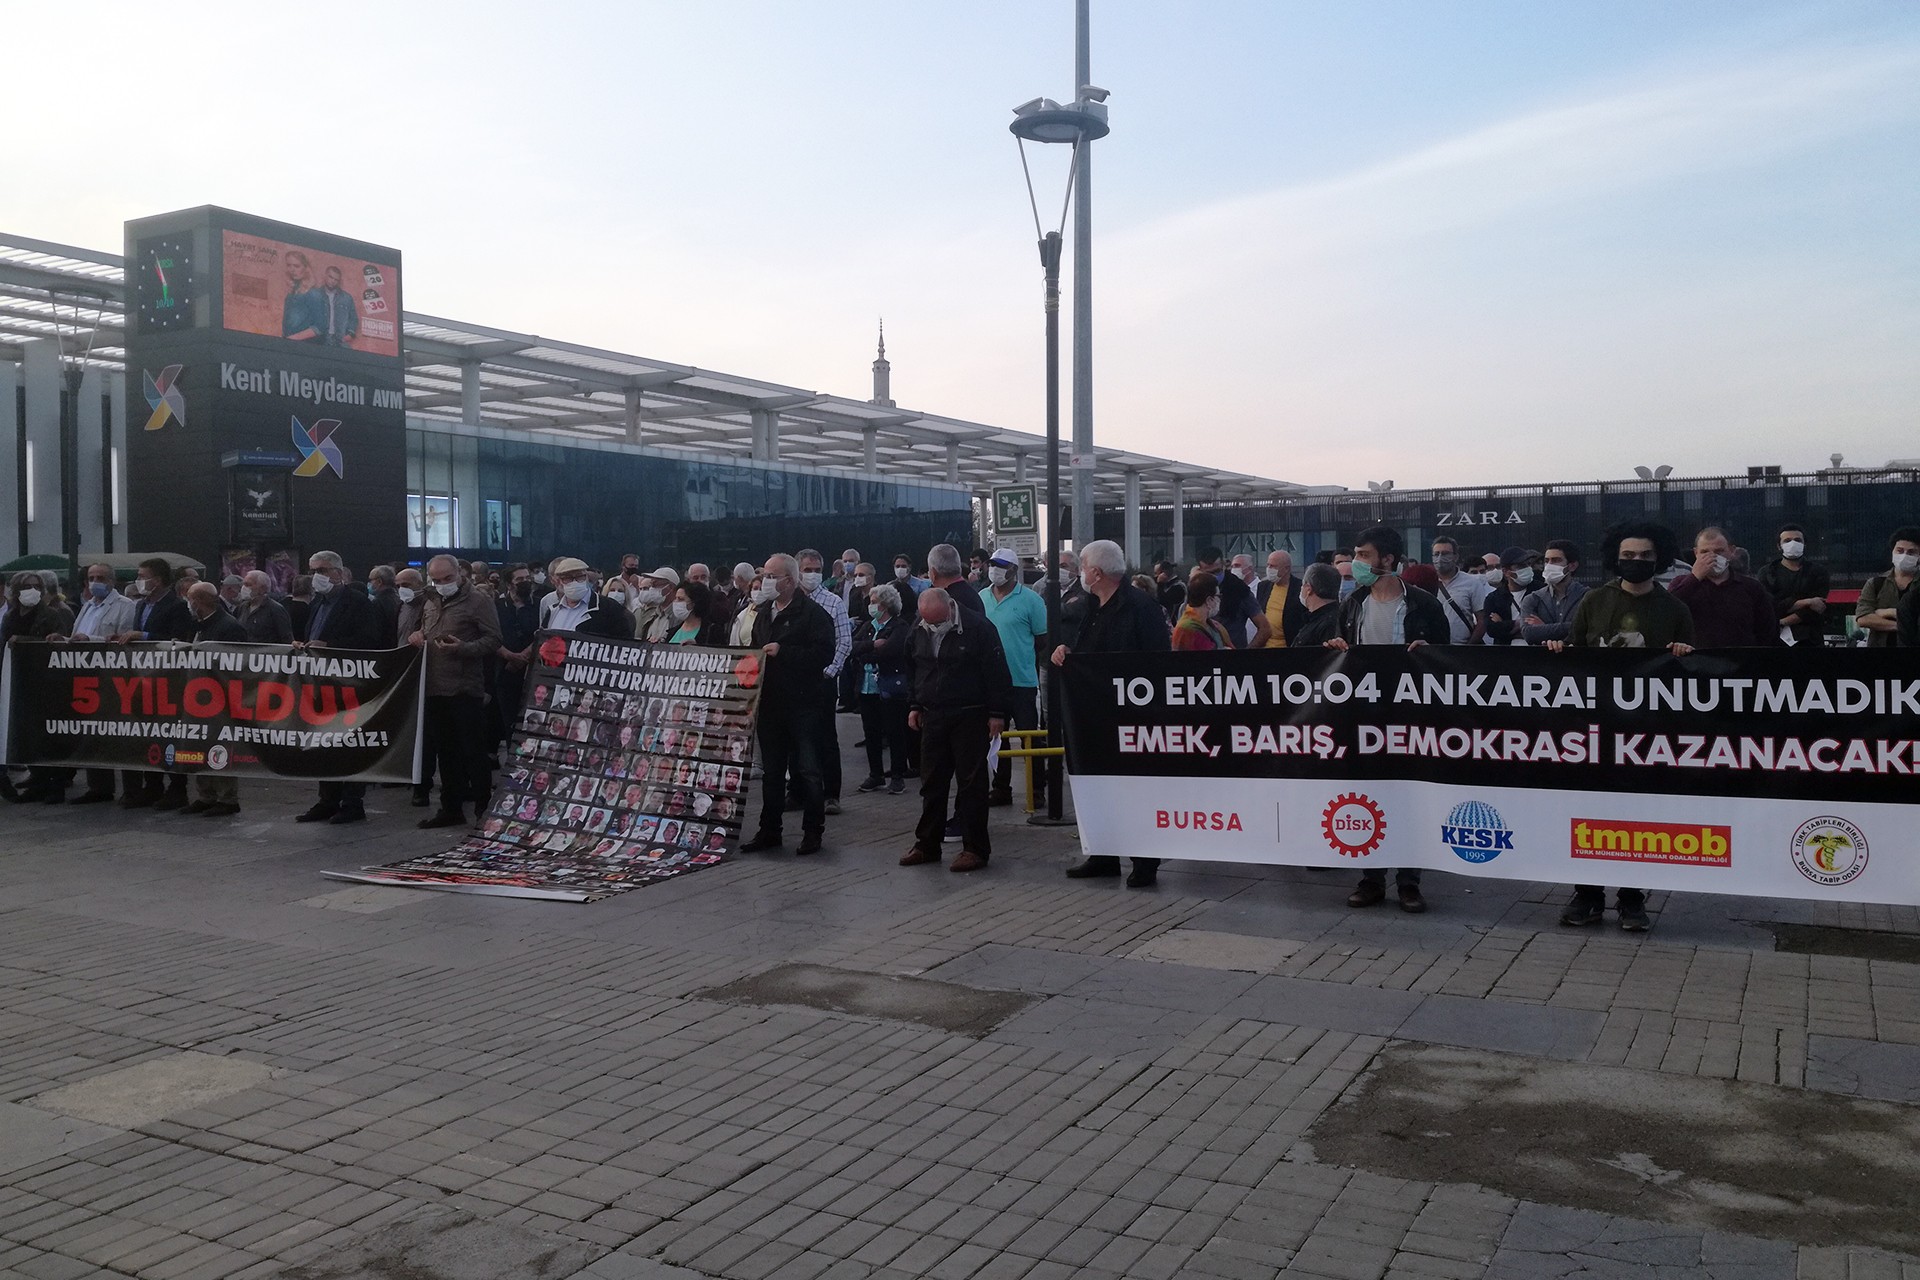 10 Ekim Ankara Katliamı'nda yaşamını yitirenler, katliamın 5'inci yıl dönümünde Bursa'da düzenlenen etkinlikte anıldı.